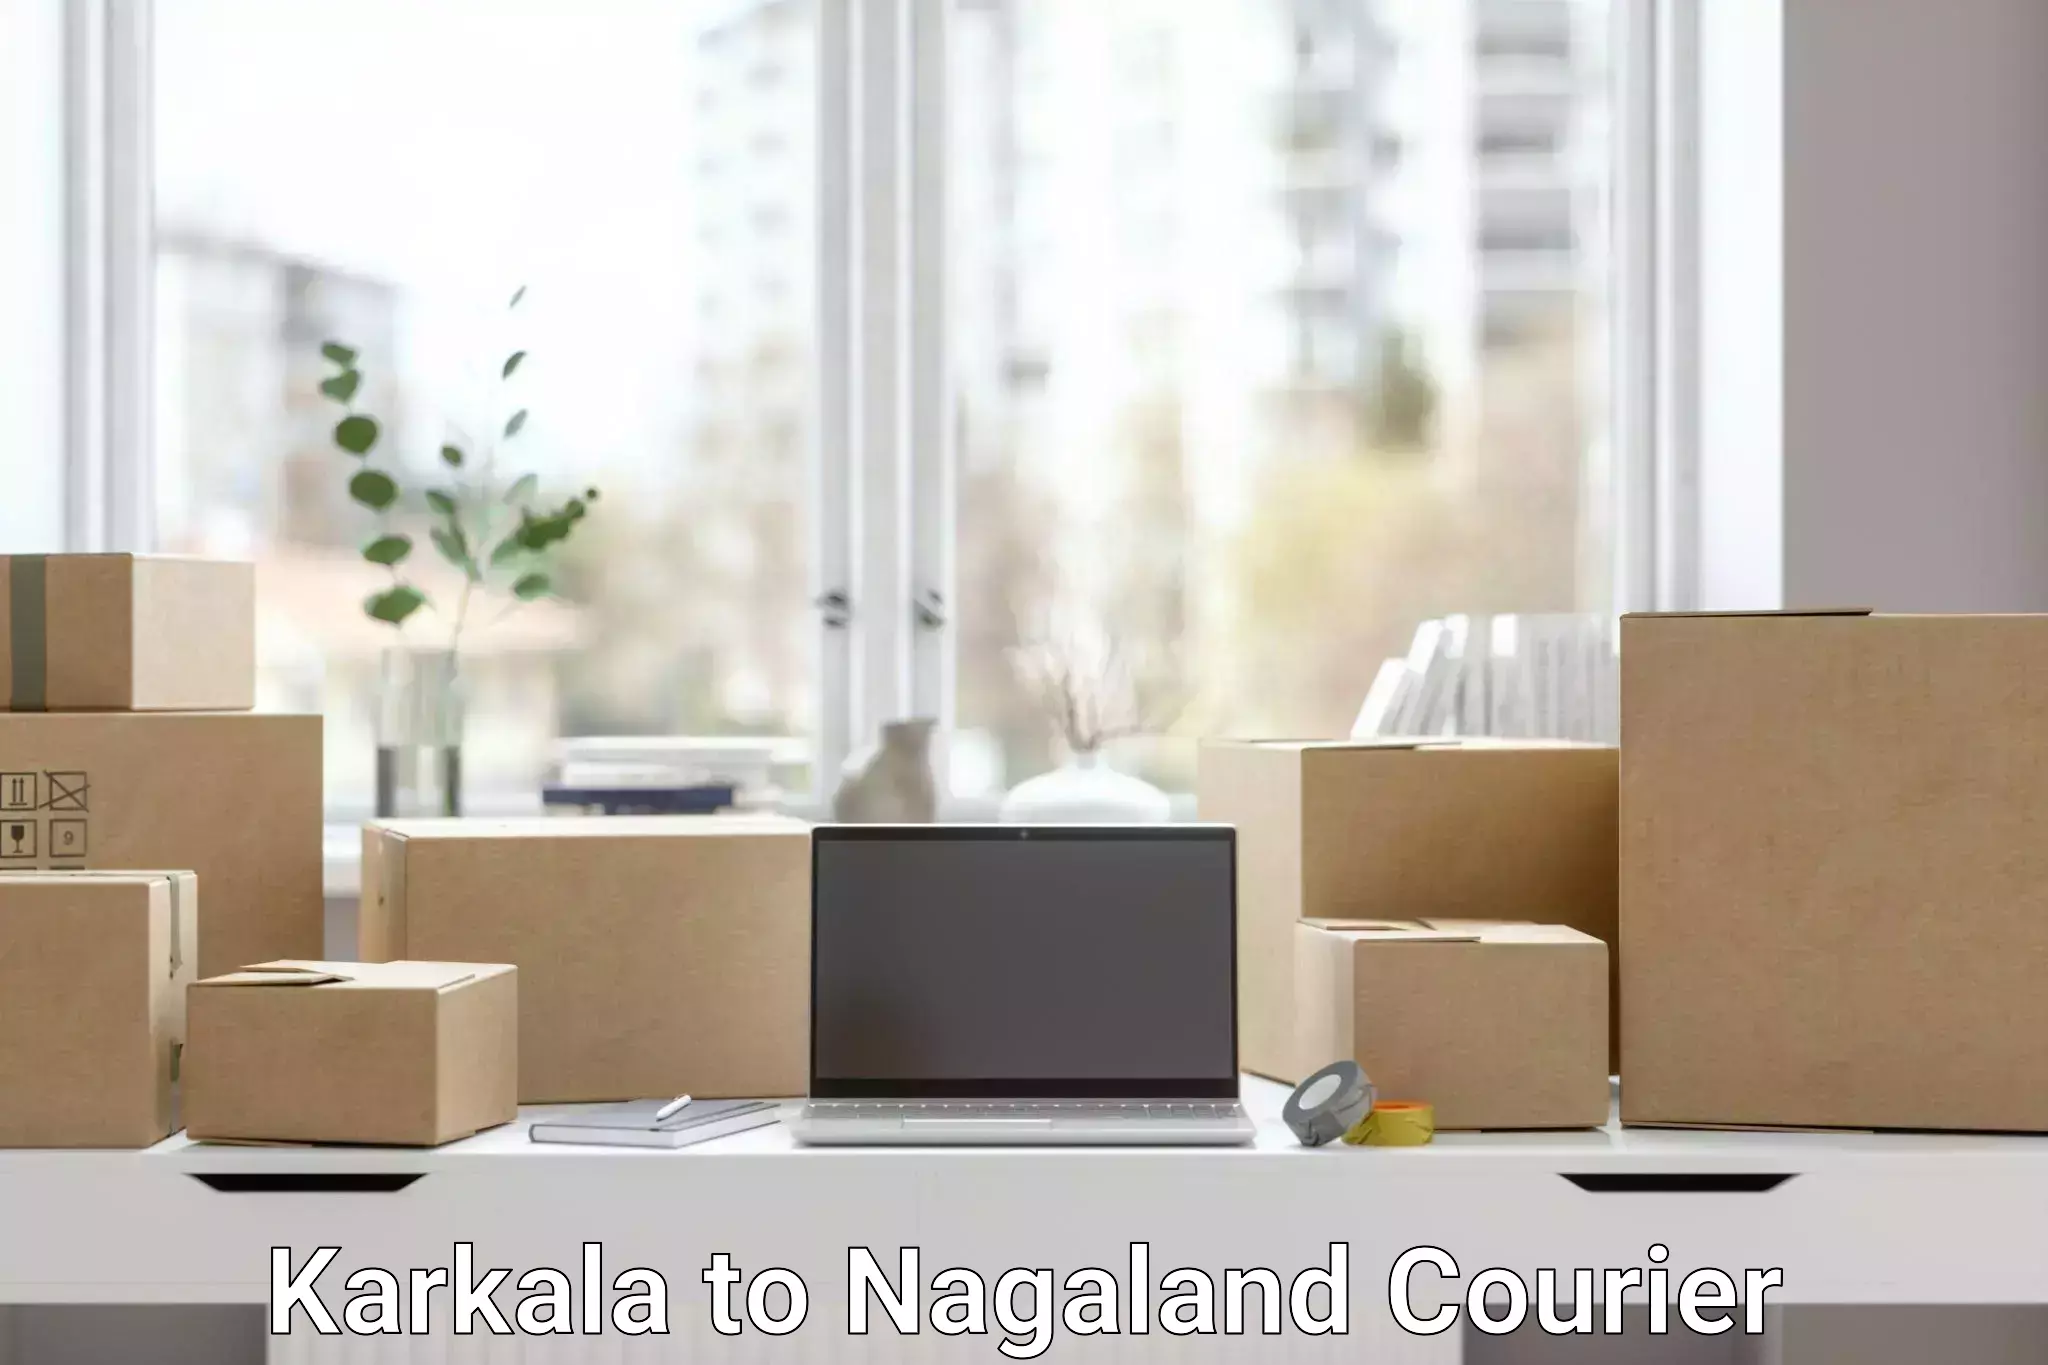 Efficient parcel transport Karkala to Nagaland